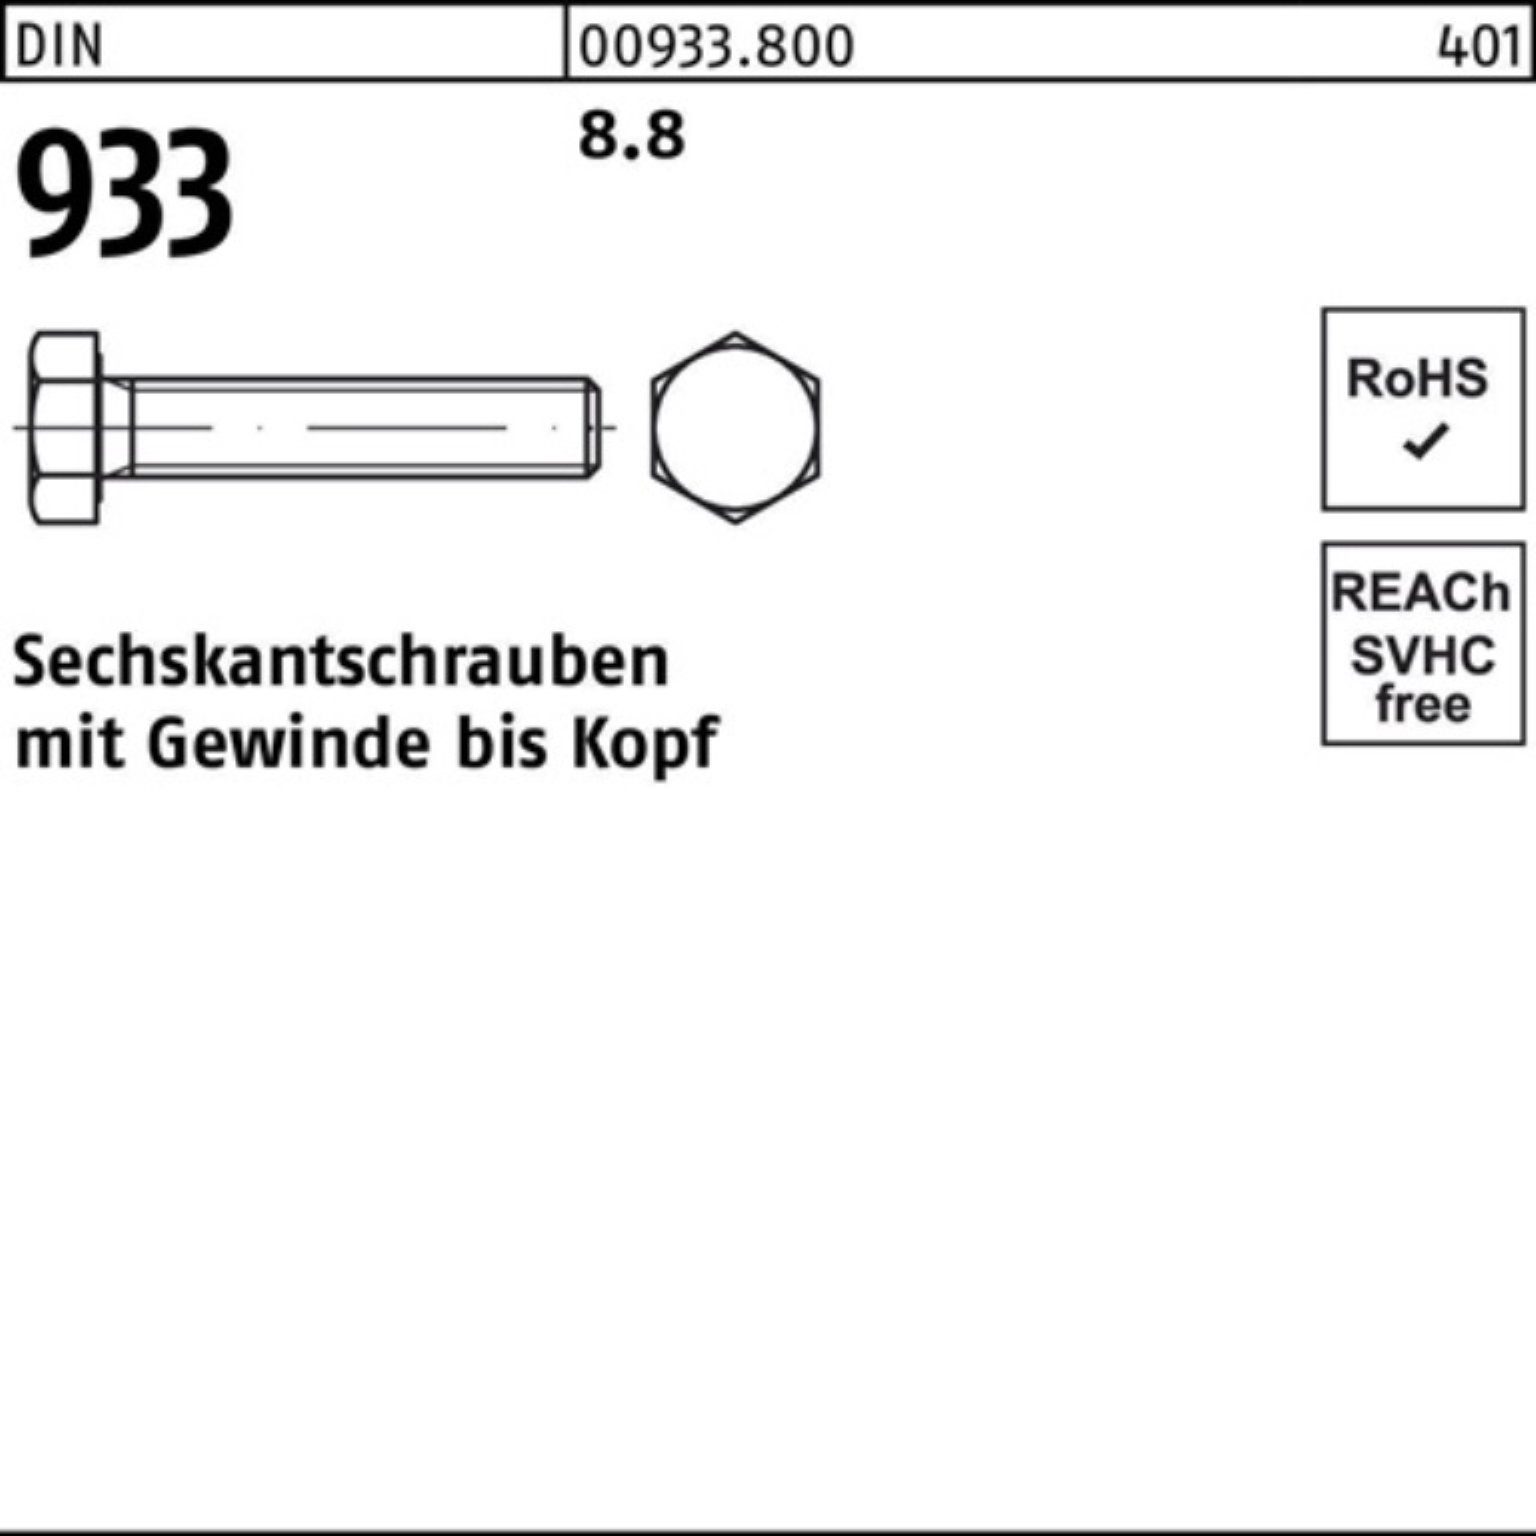 Reyher Sechskantschraube DIN 8.8 150 100er VG Pack Sechskantschraube Stück 933 M48x DIN 1 933